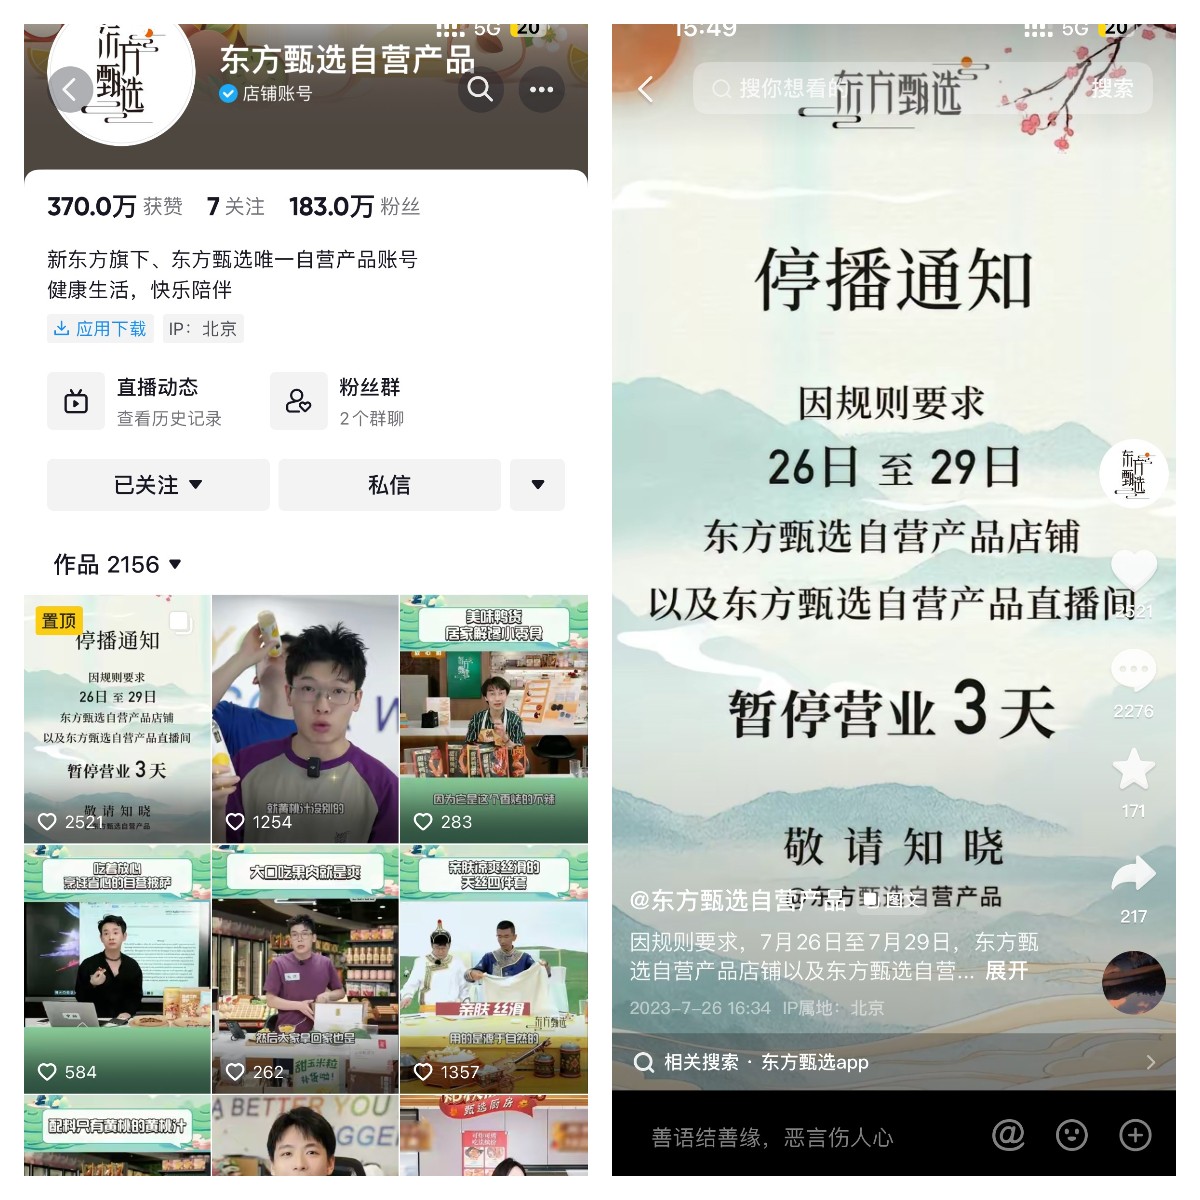 东方甄选抖音自营产品店铺被关，将转战App直播三天丨最前线